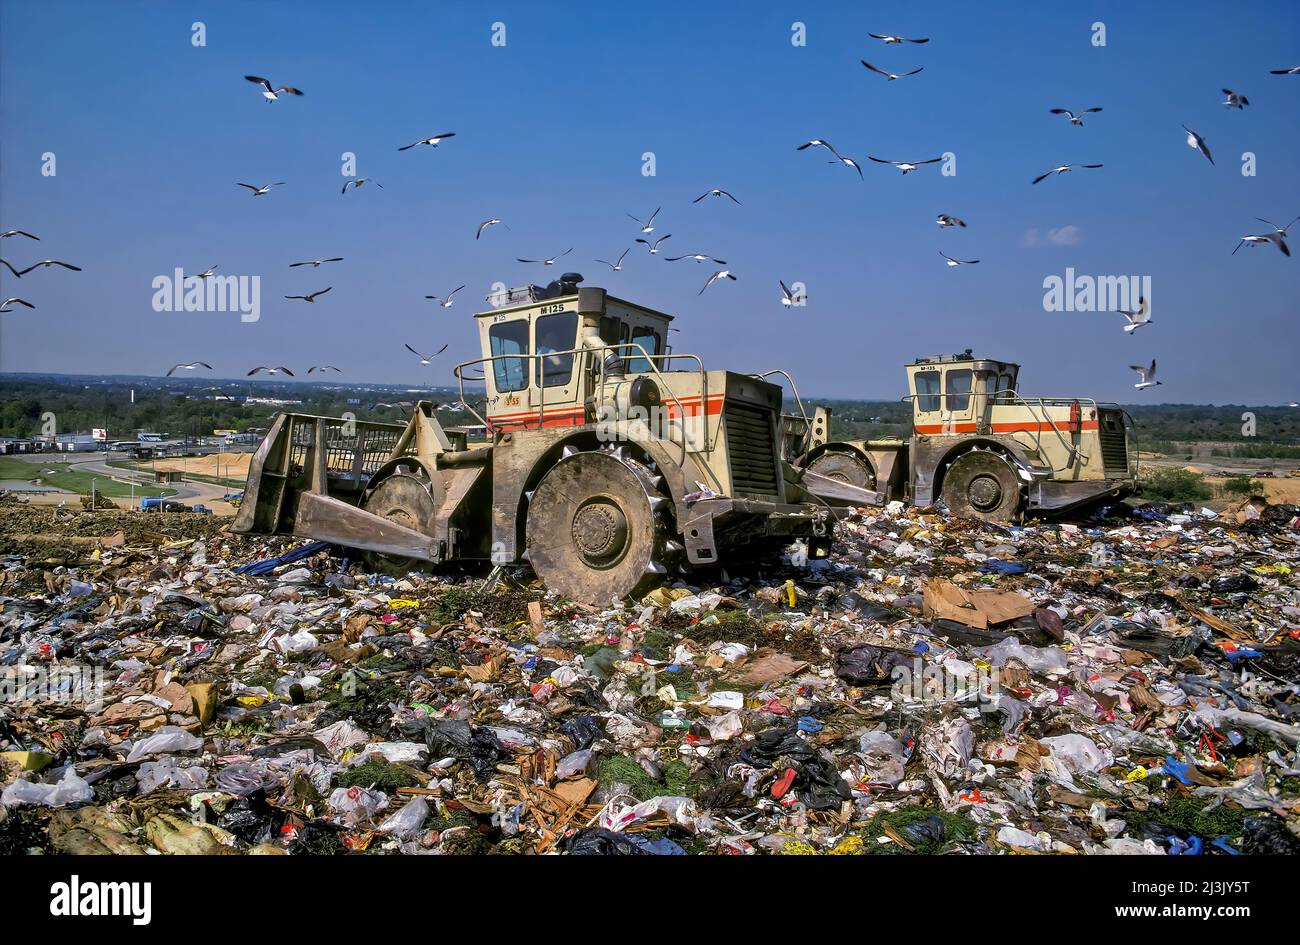 Les pieds de mouton les dozers répandent les déchets sur Landfill, Pennsauken, PA Banque D'Images